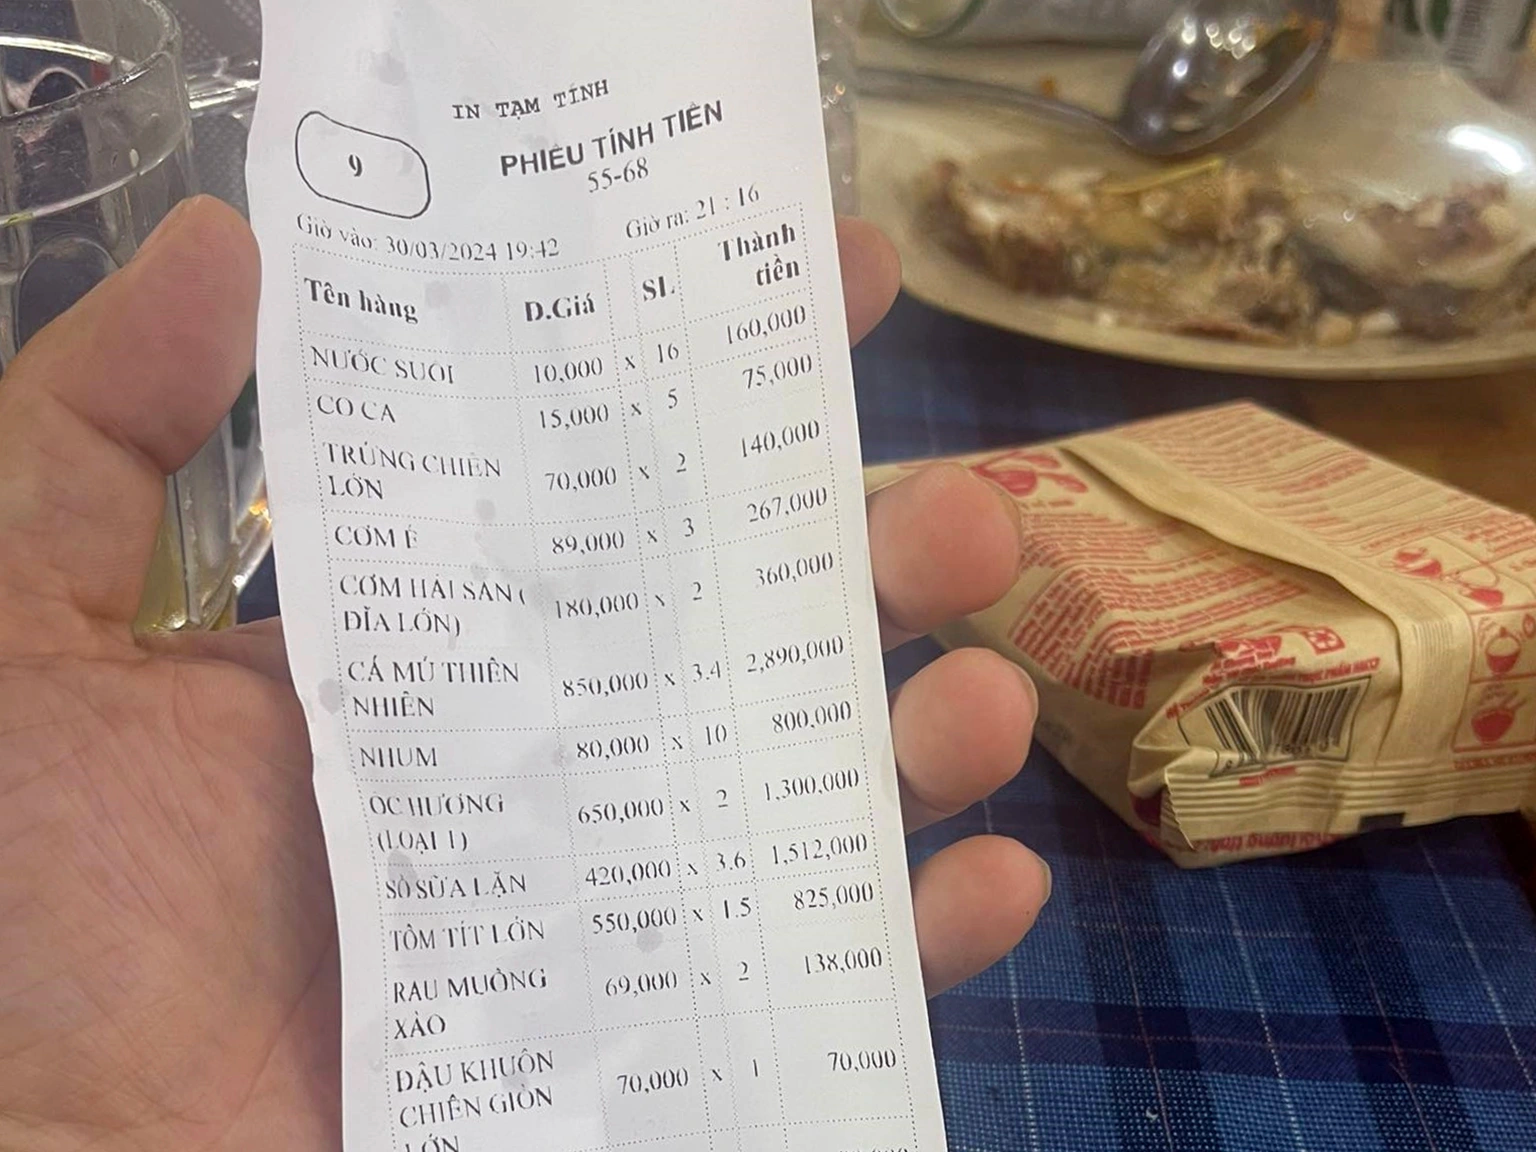 Chi tiết hóa đơn thanh toán cho bữa hải sản của anh Cường (Ảnh: Phan Cường).